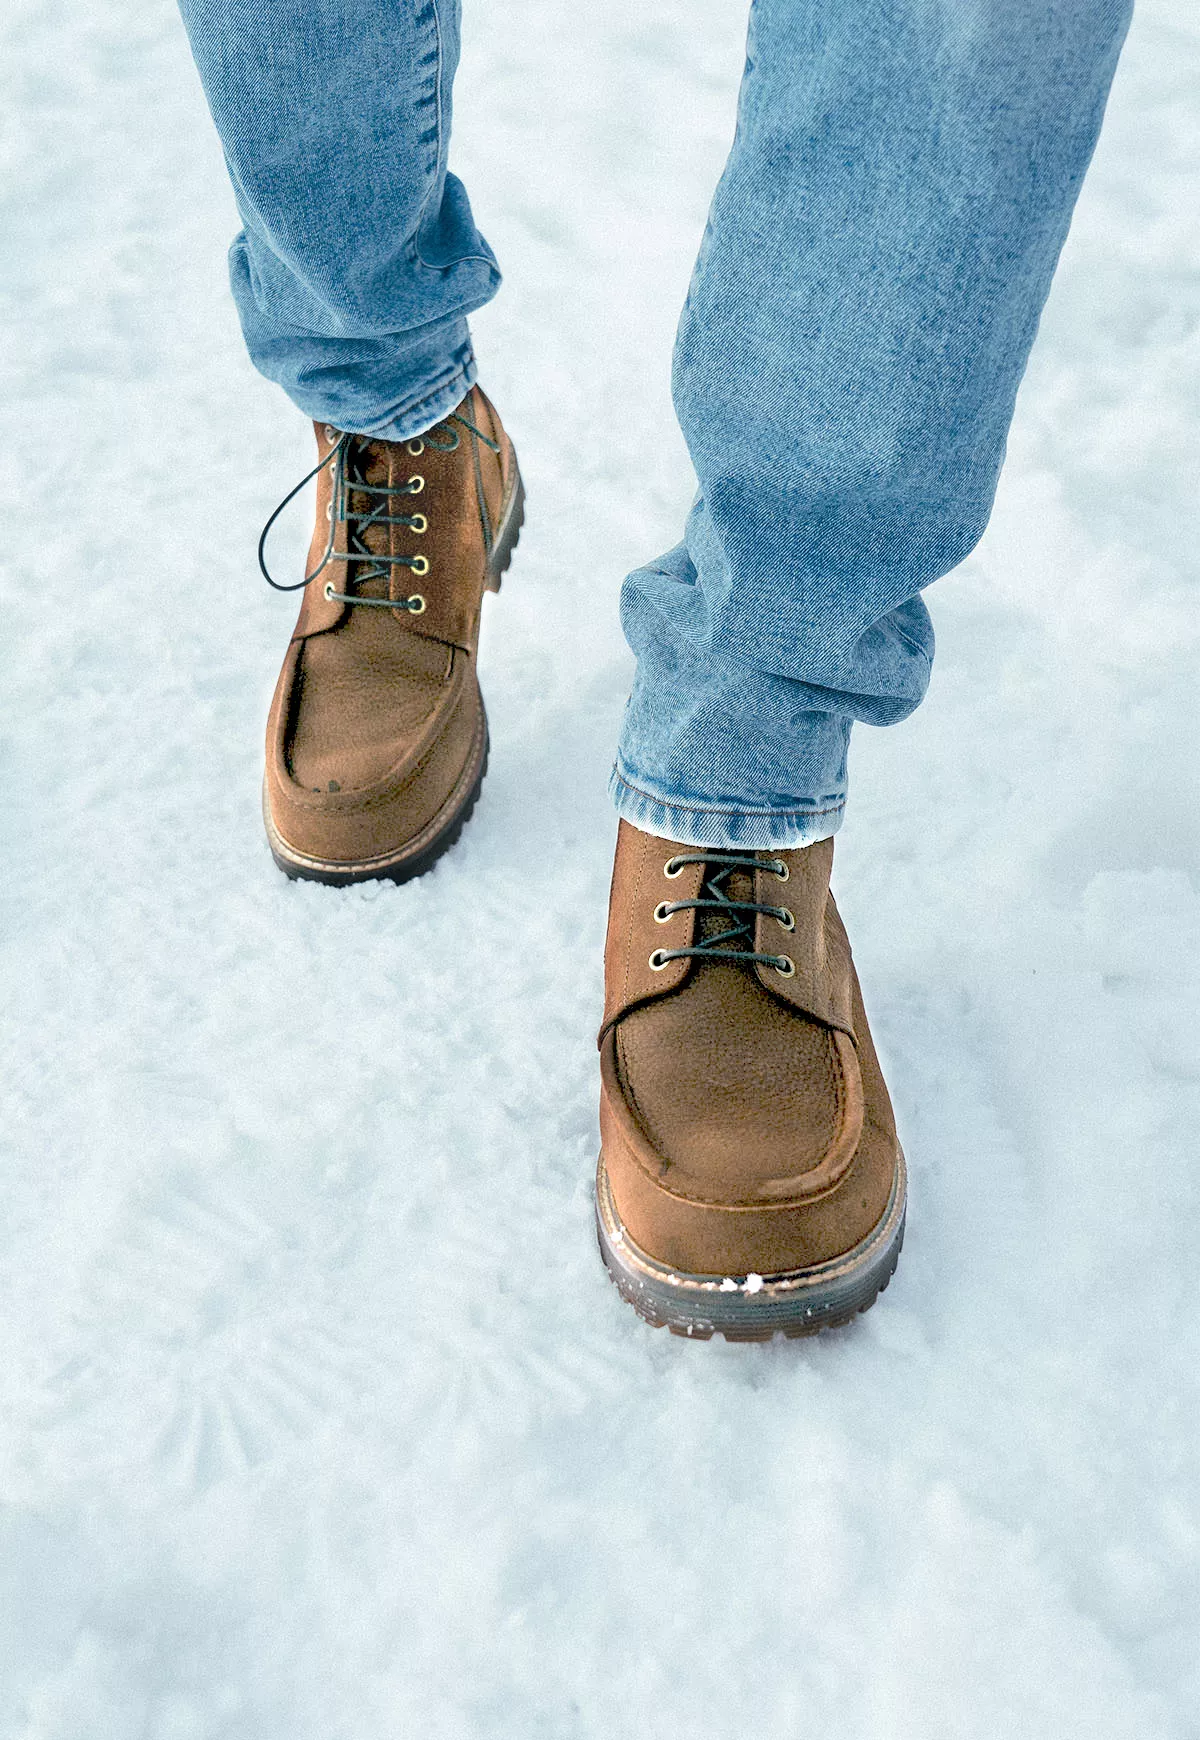 Buty zimowe ze skóry jagnięcej - A170 Brązowy